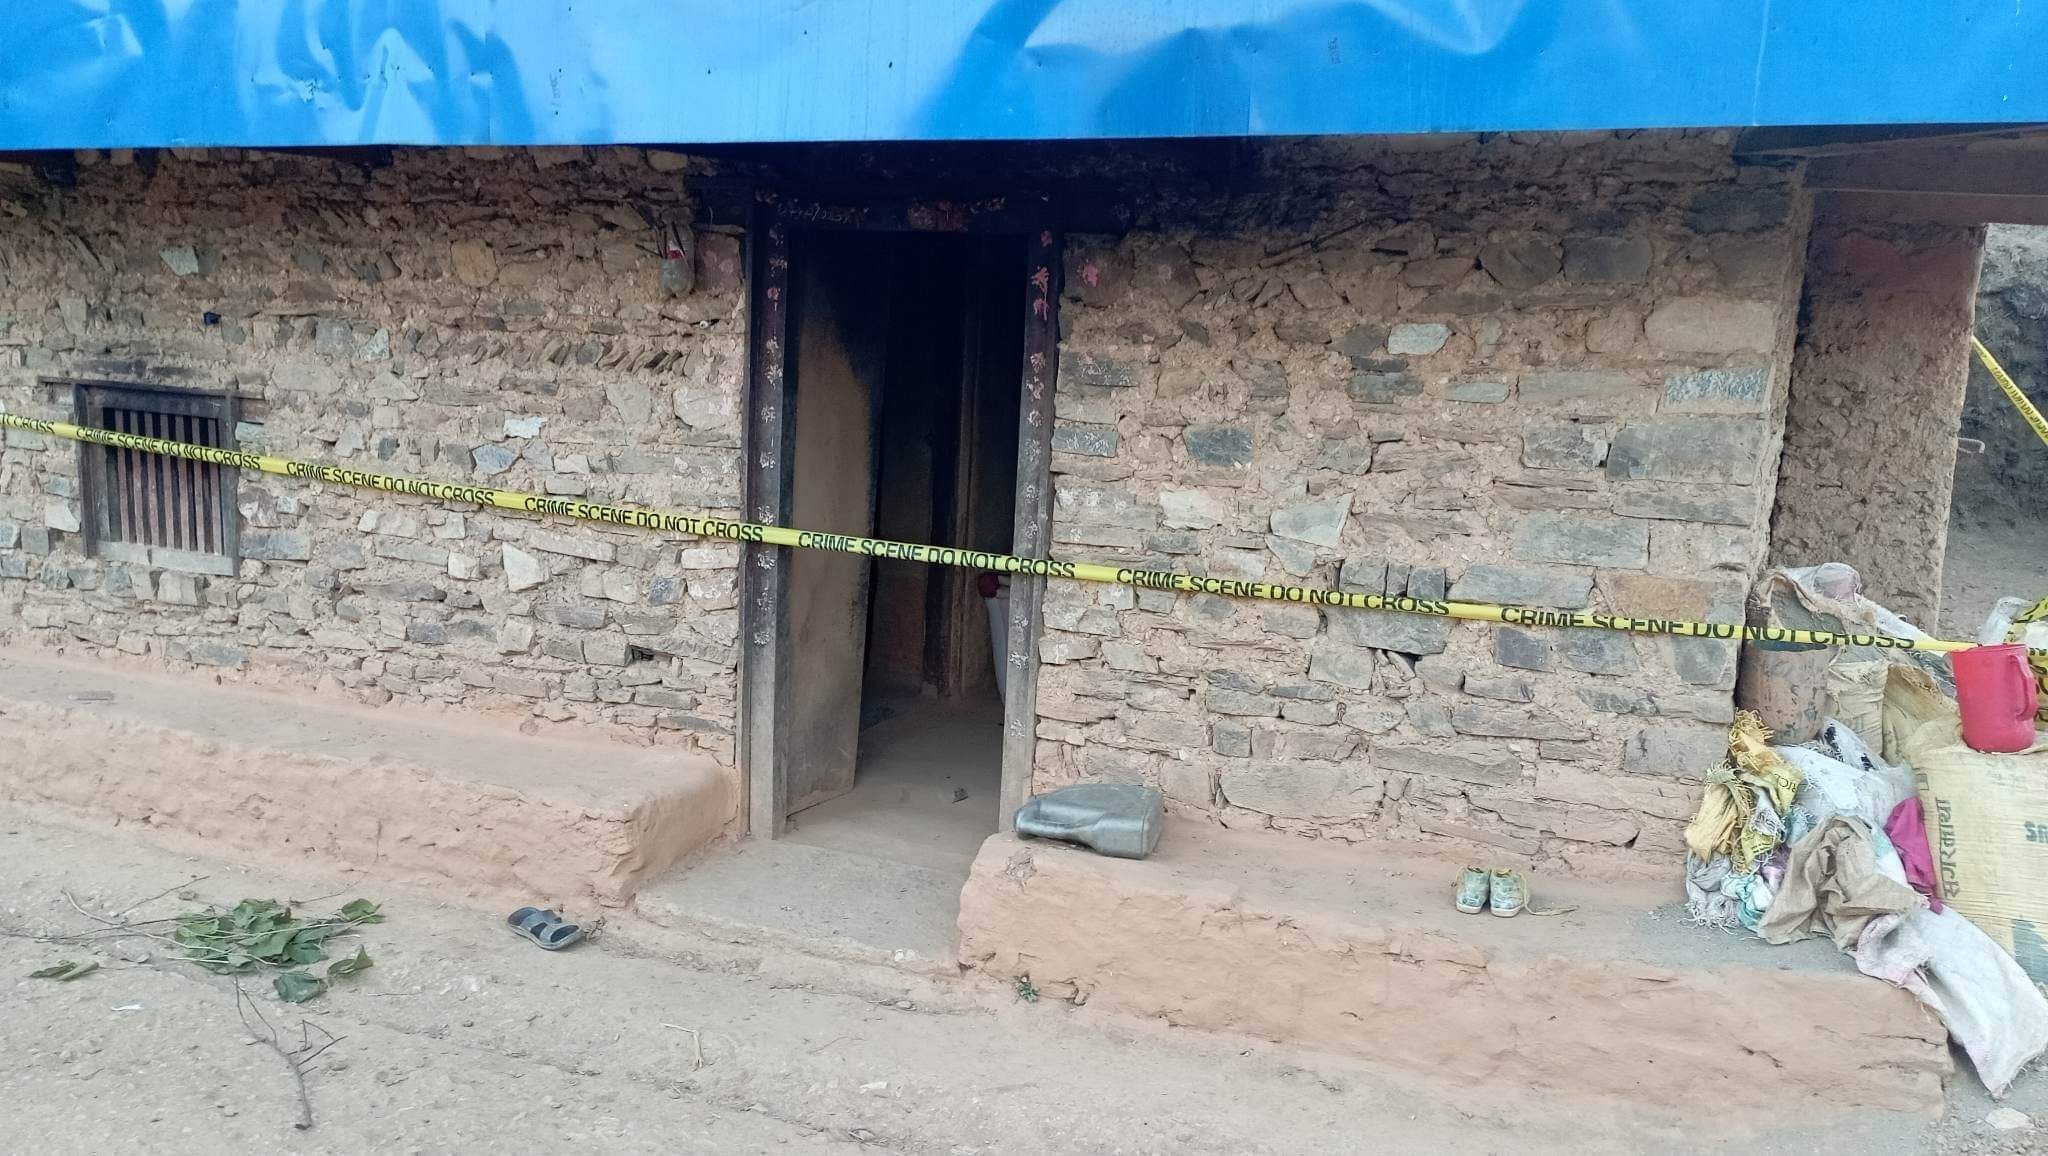 सल्यानमा एक महिला आफ्नै घरमा मृत फेला : श्रीमान प्रहरी नियन्त्रणमा